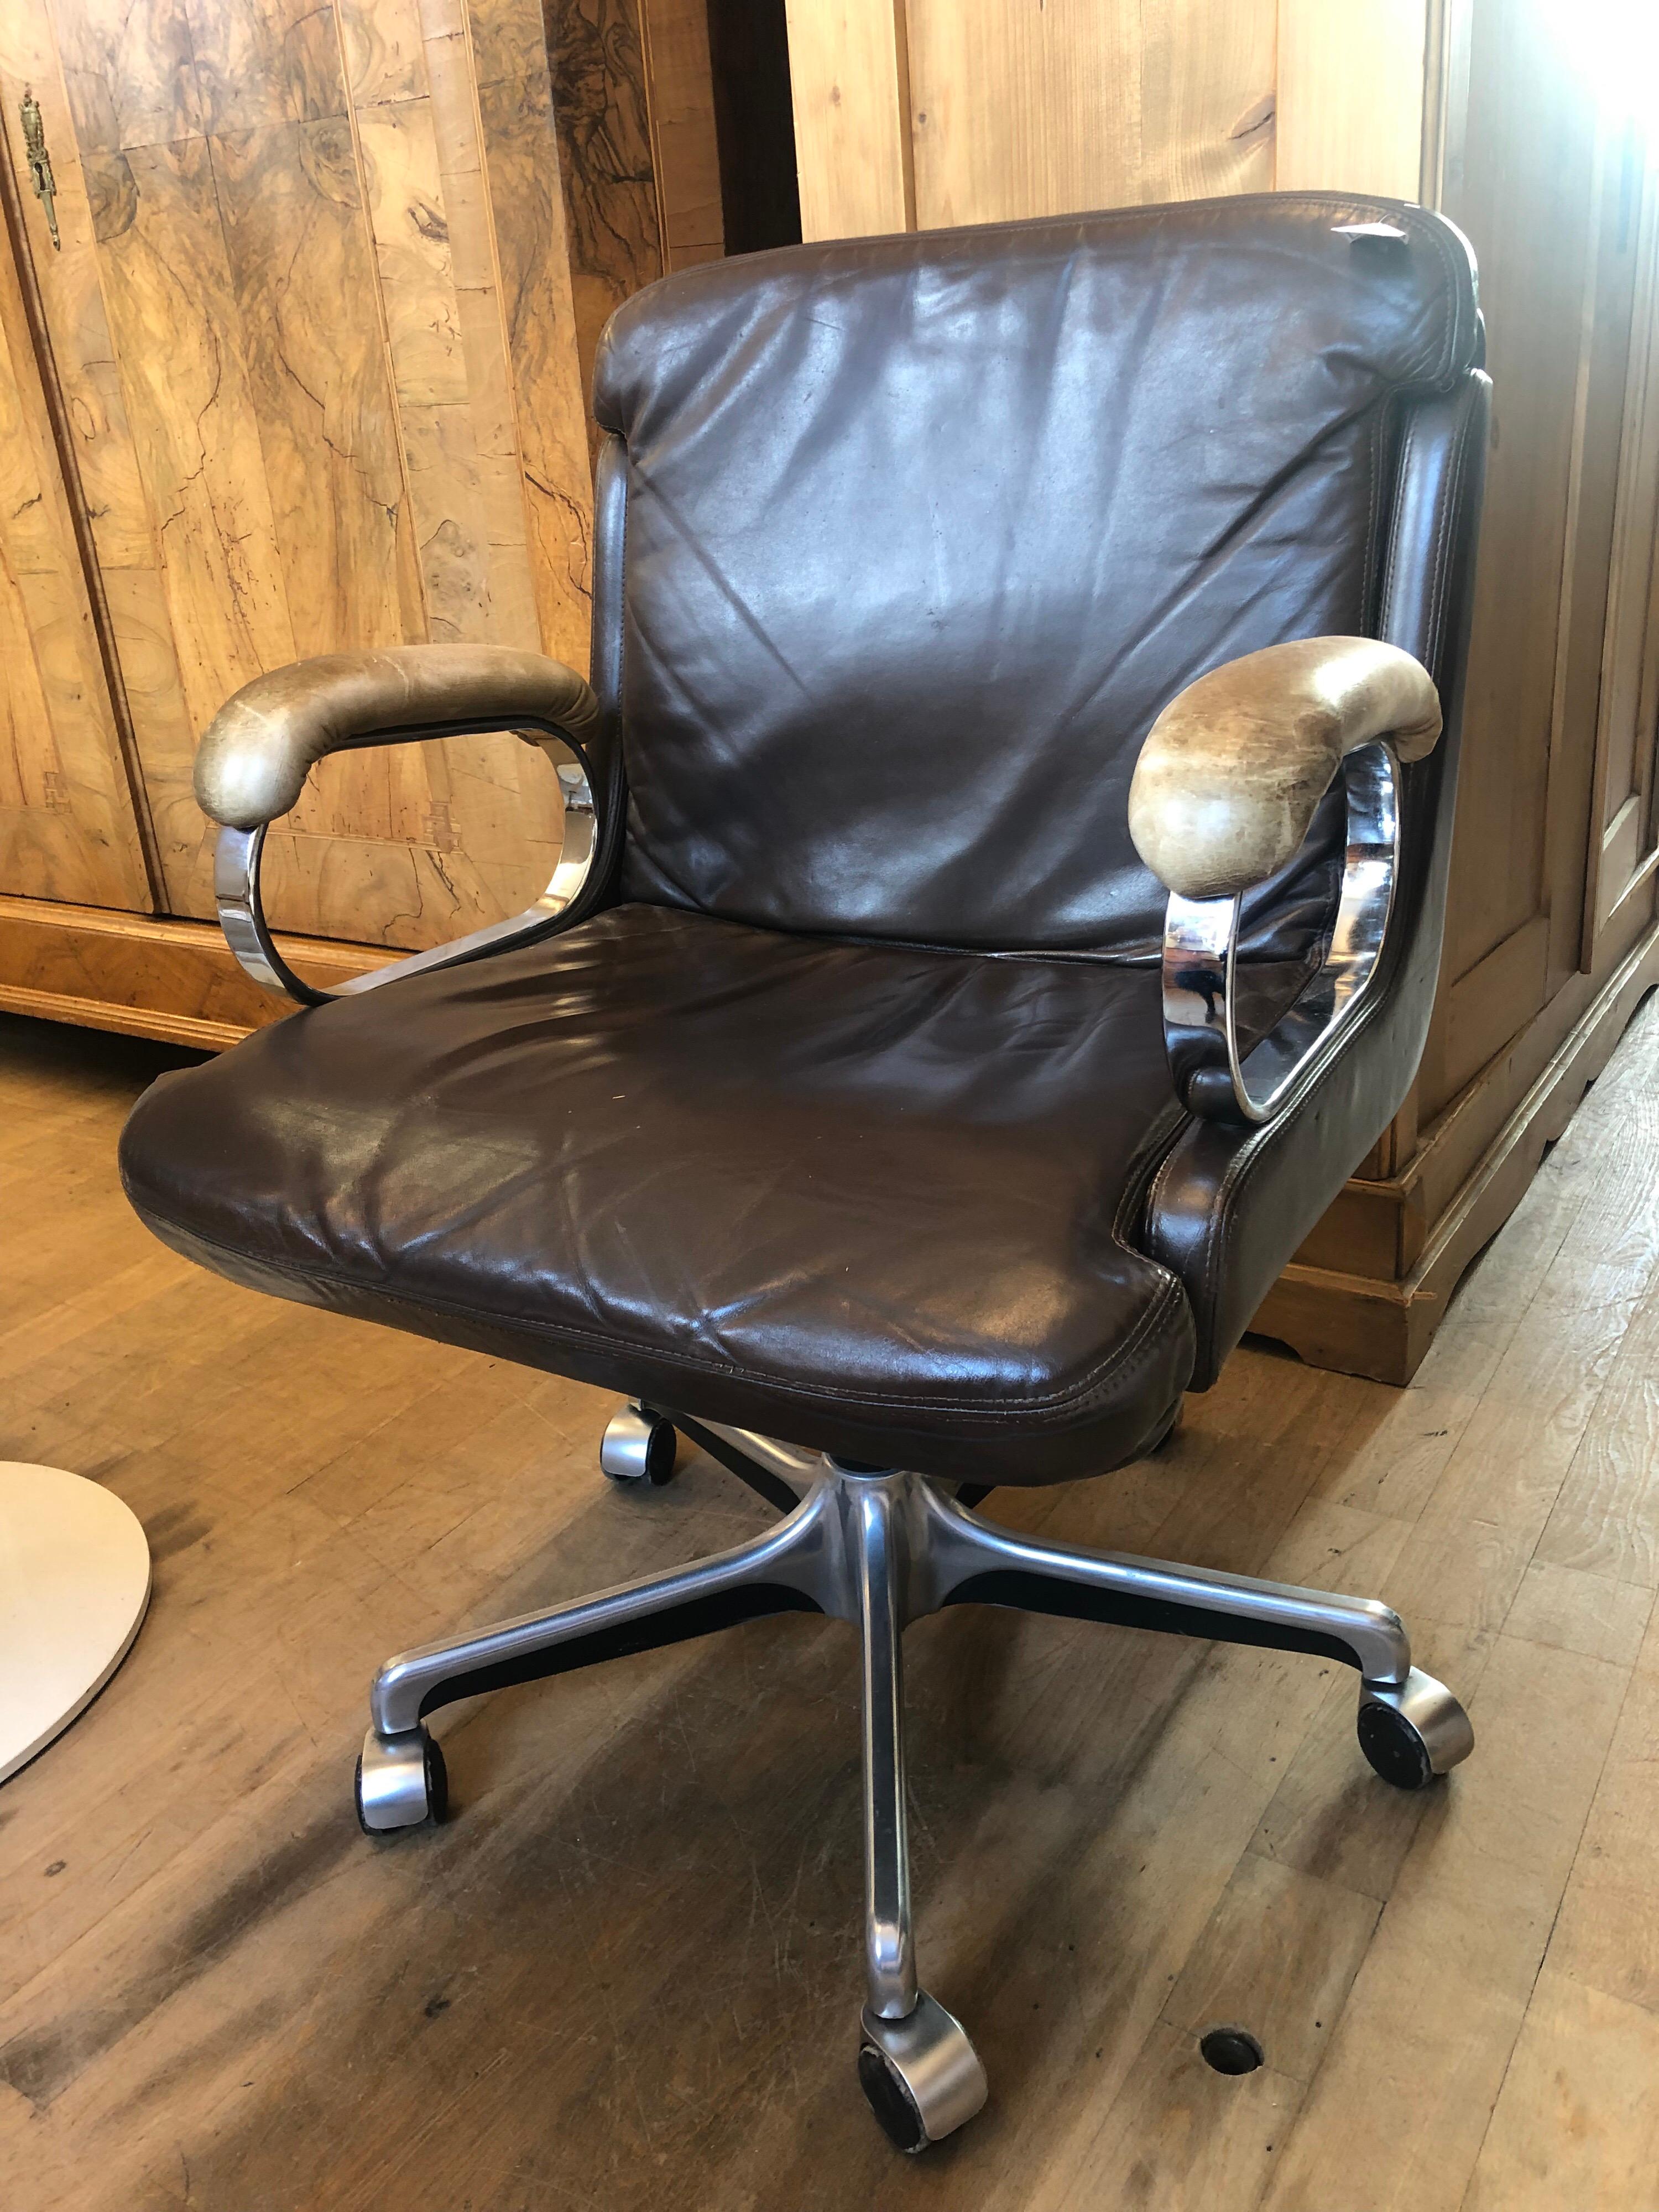 Brown Leather Used Swivel Chair by Züco Design / Zueco, Switzerland (Schweizerisch)